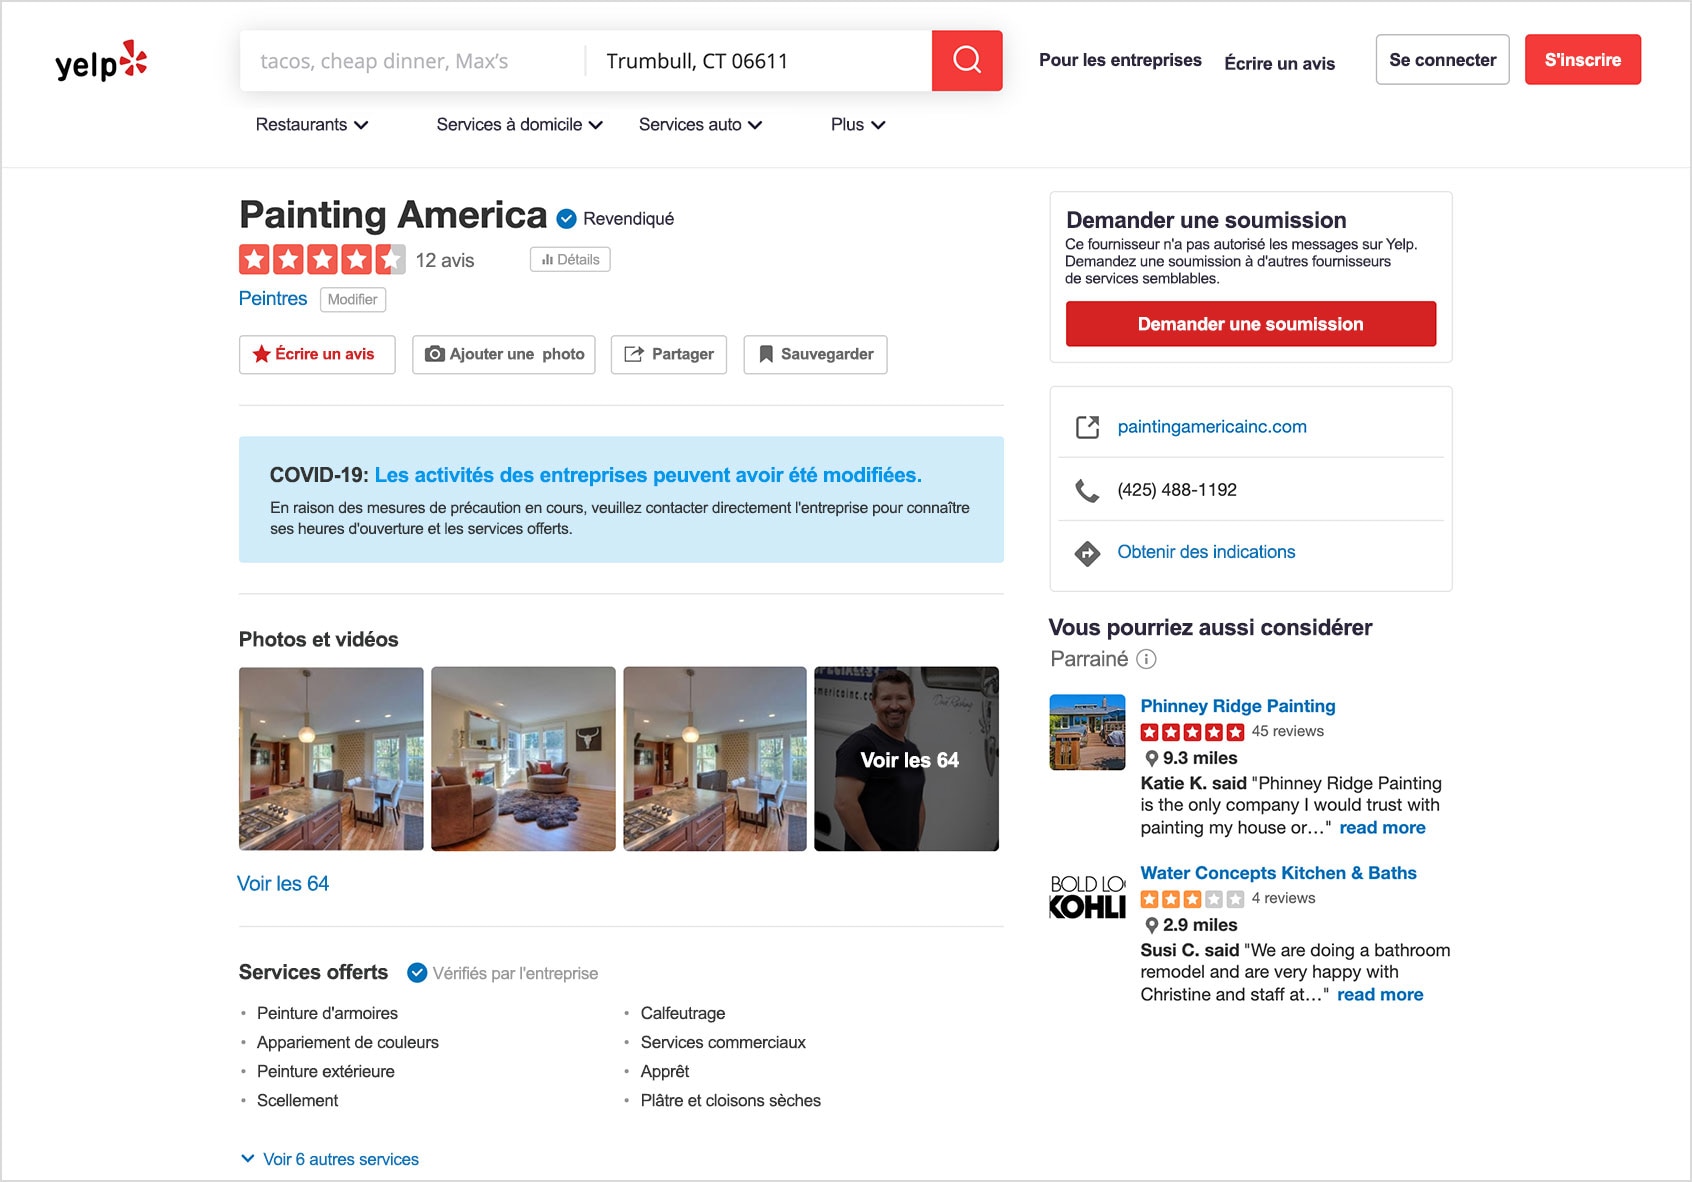 Exemple de profil sur Yelp pour une entreprise de peinture.
